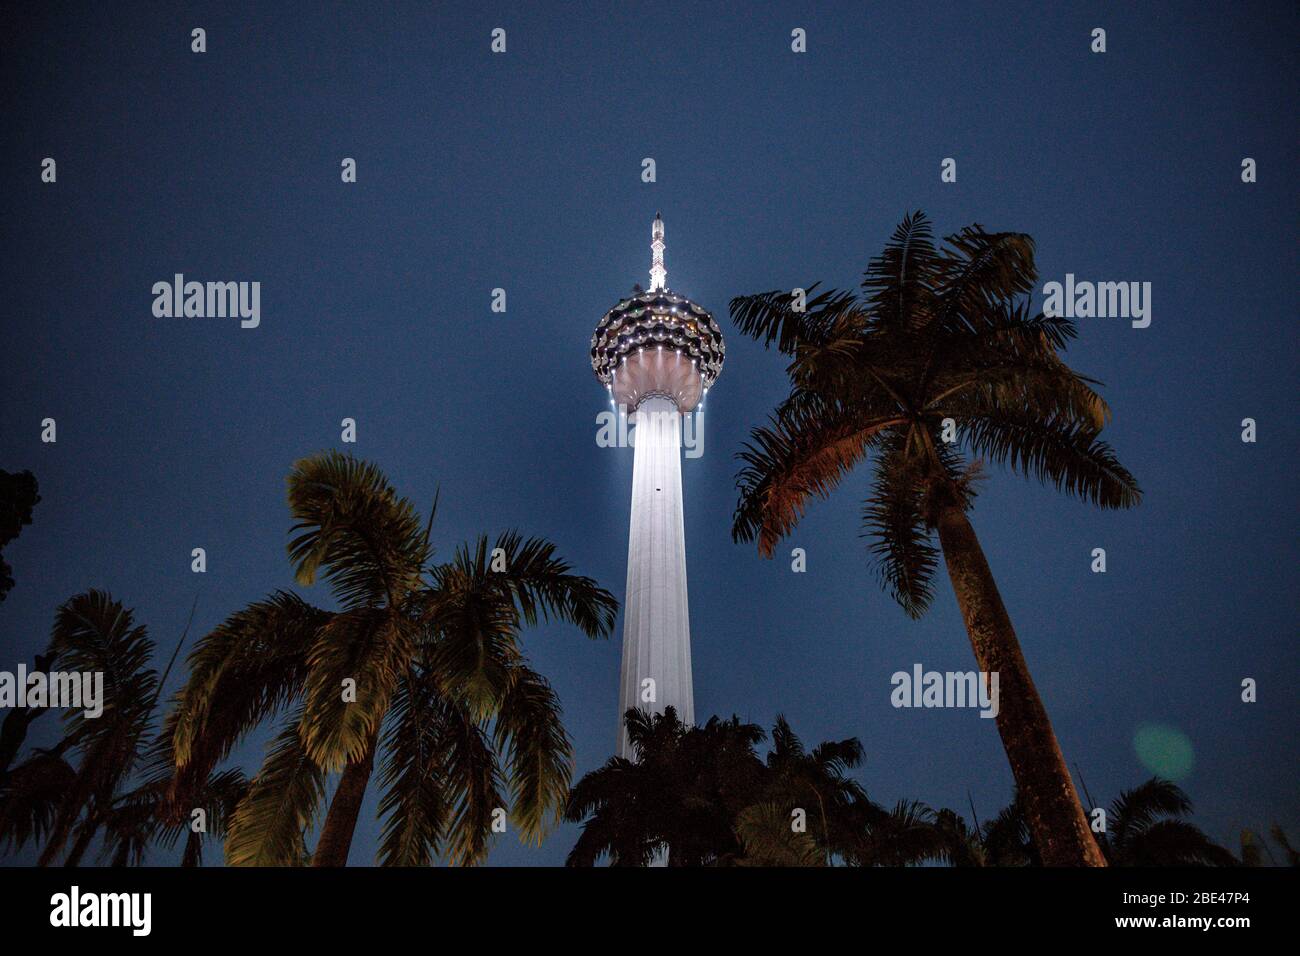 Tour de communication de Kuala Lumpur et palmiers dans une vue de nuit d'un parc - Torre de comunicaciones y palmeras en una vista nocturna desde un parque Banque D'Images